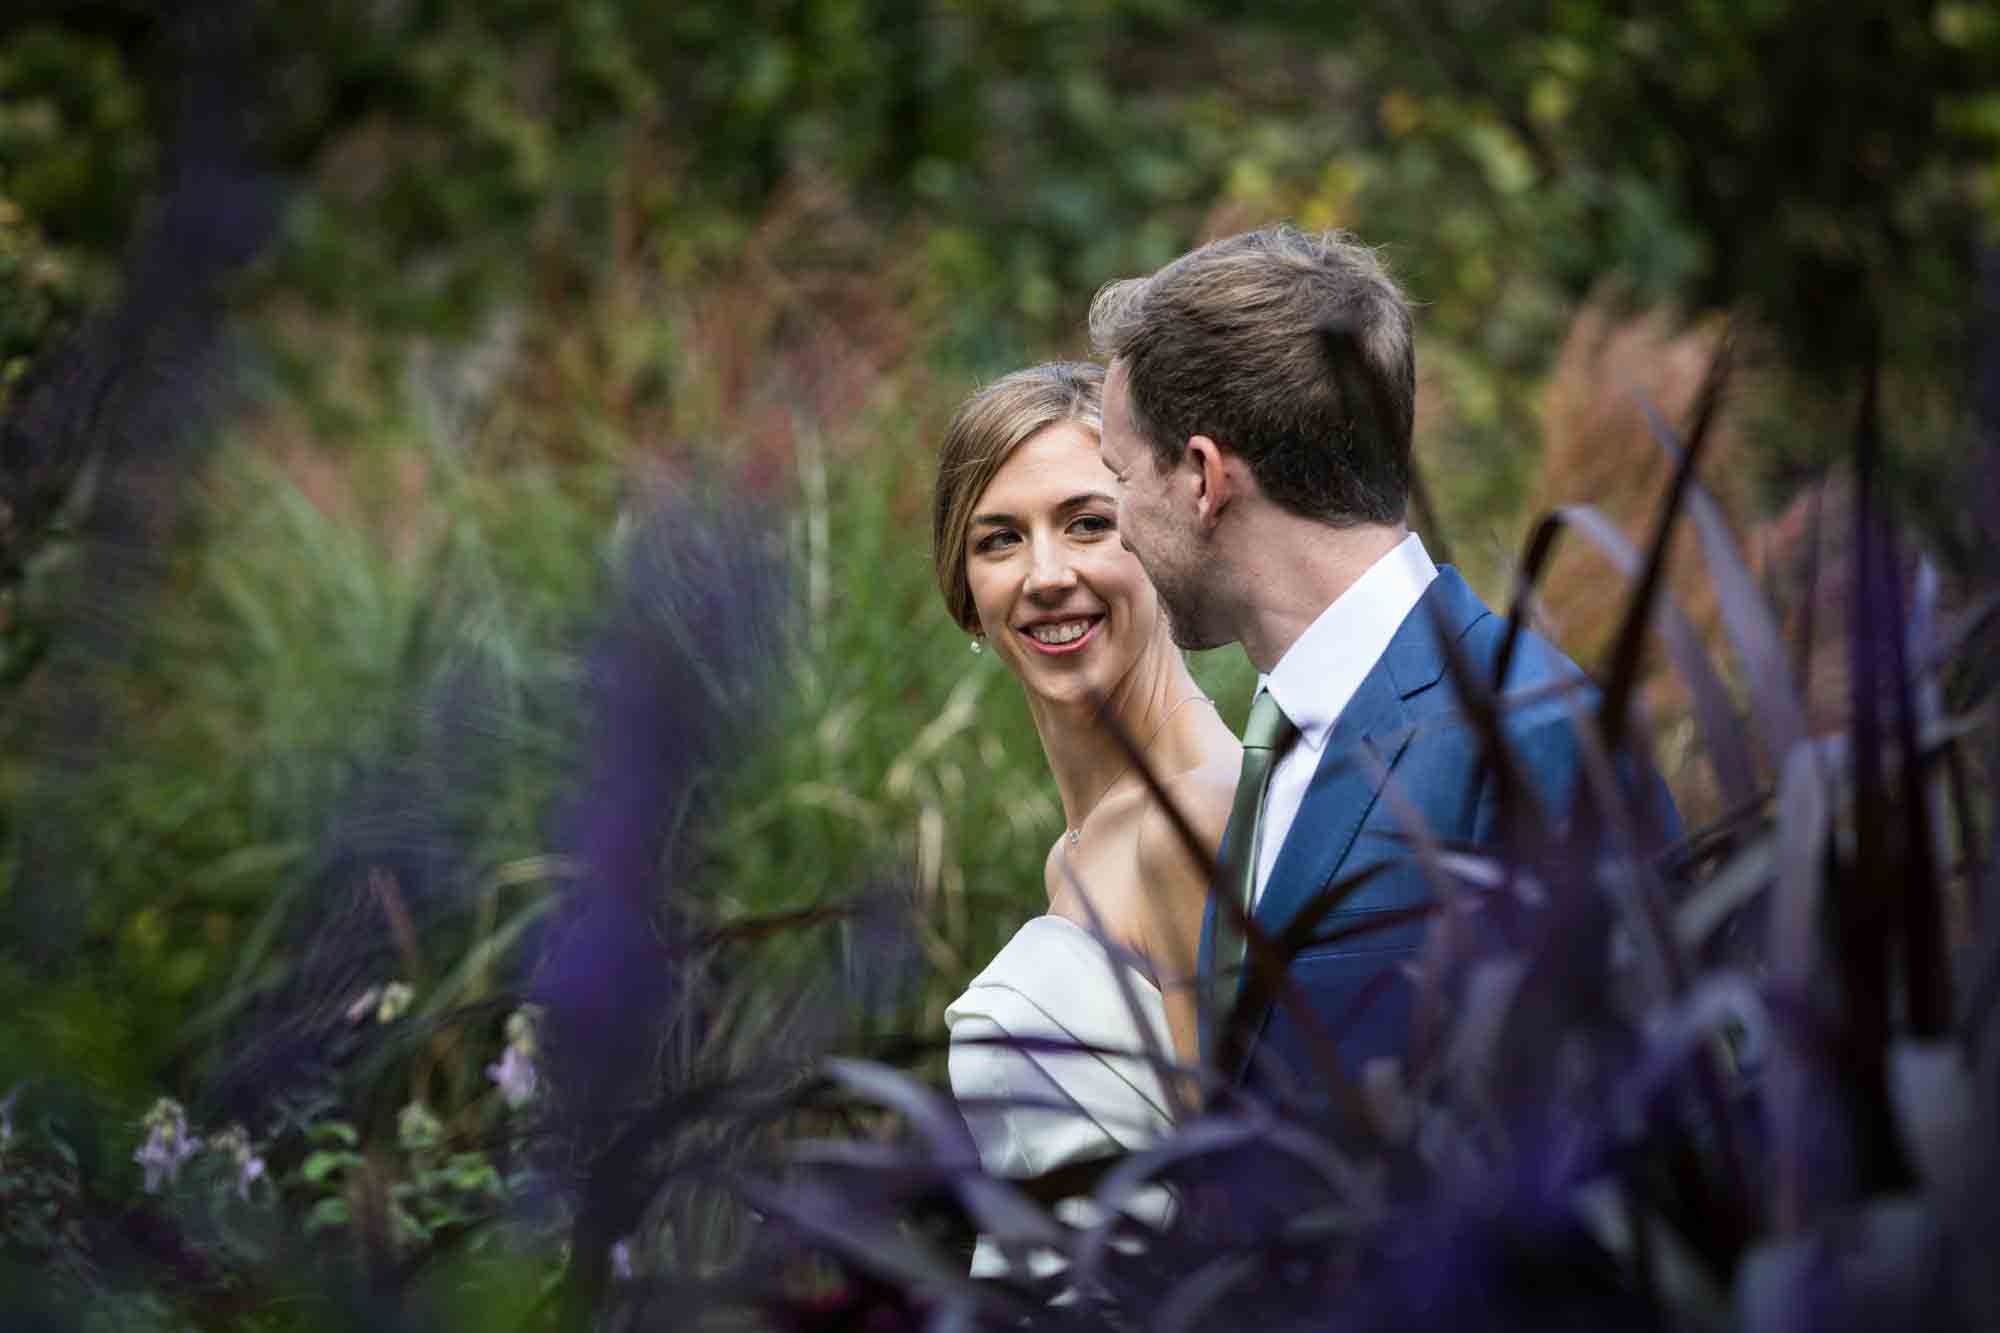 Conservatory Garden wedding photos of bride and groom walking through garden